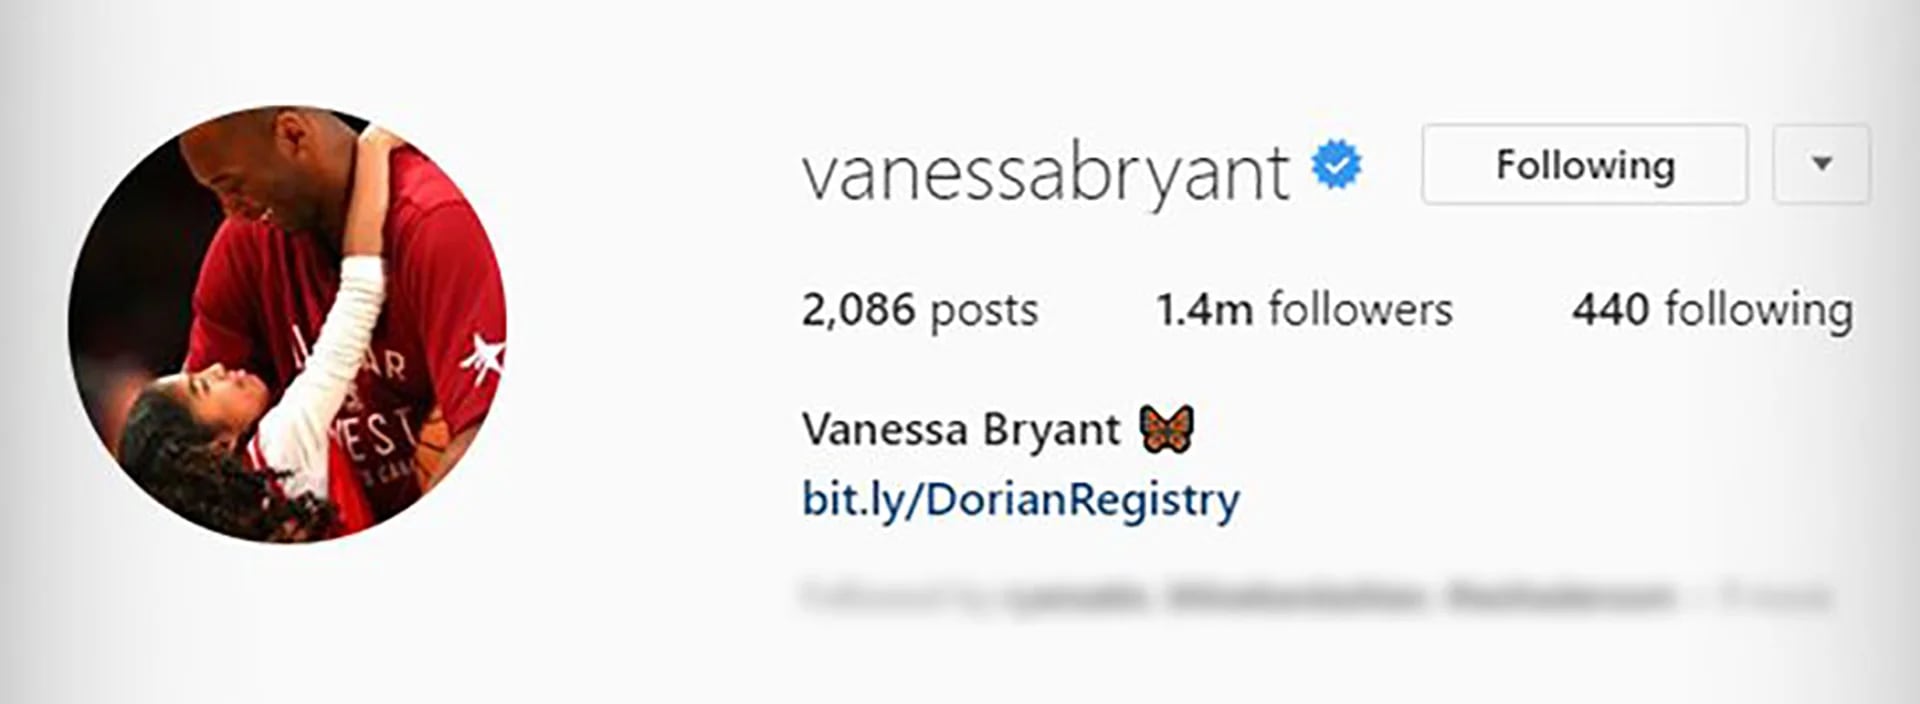 La nueva foto de perfil de Vanessa Laine, esposa de Kobe Bryant